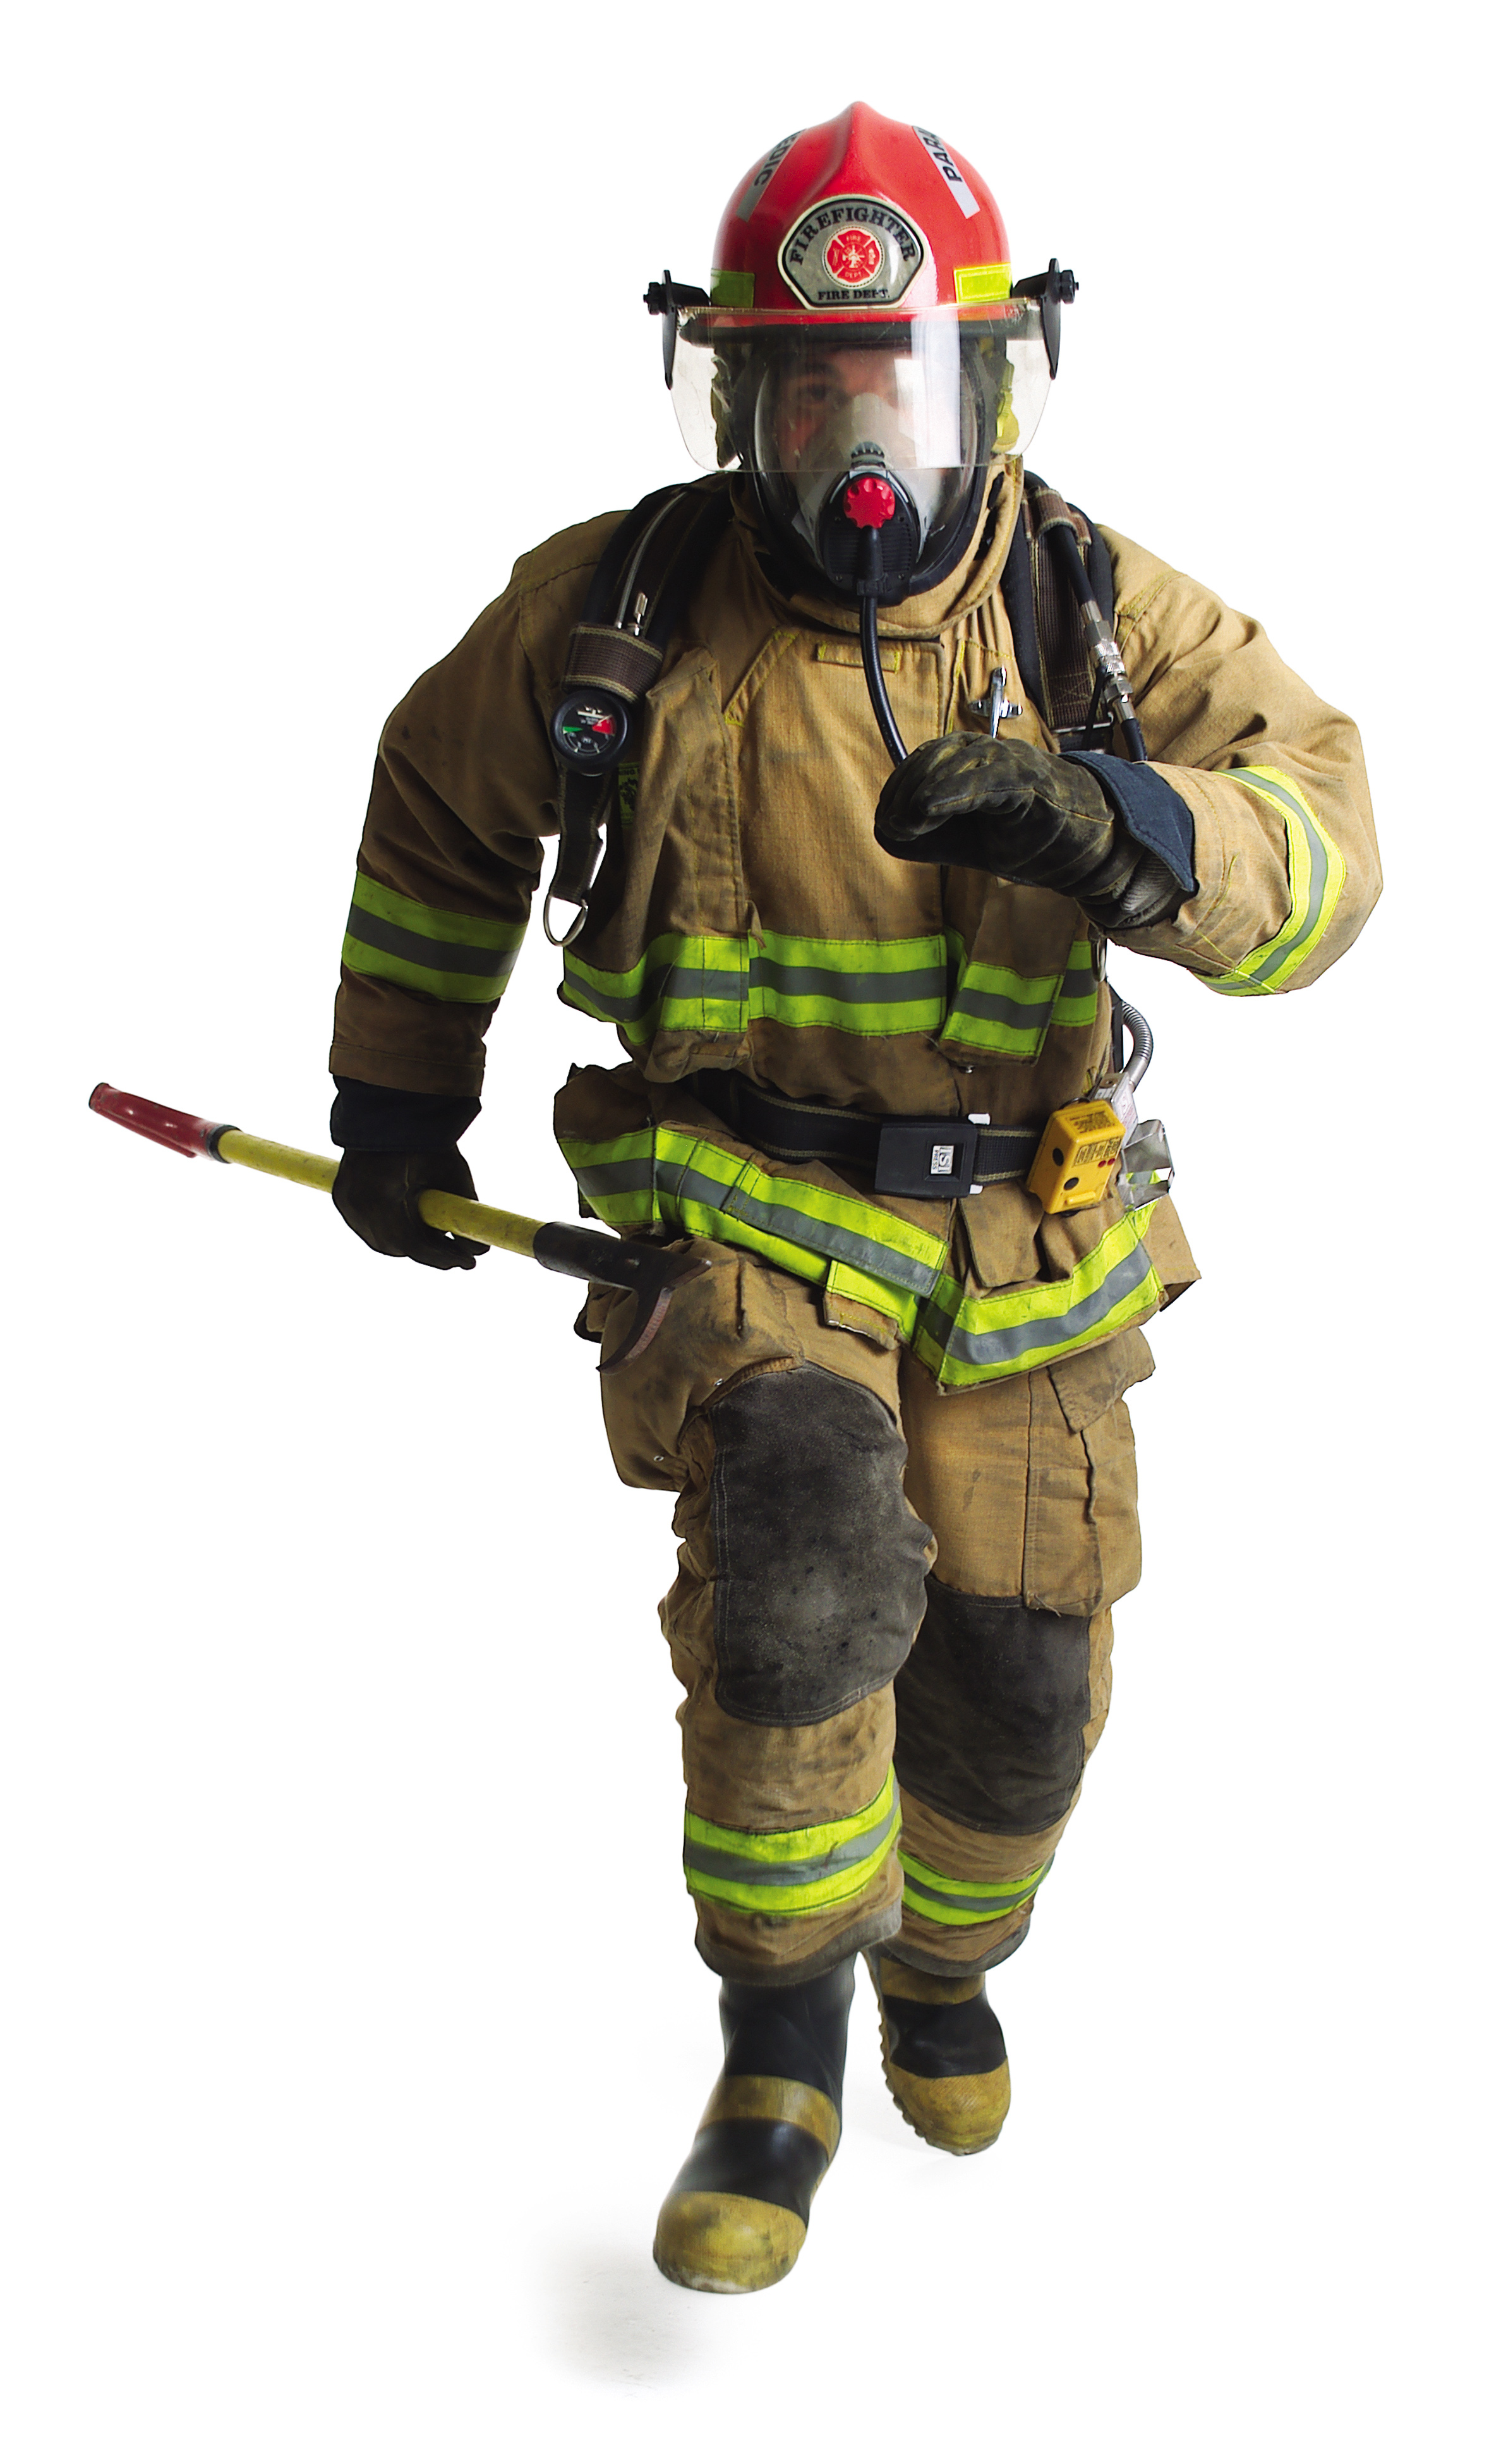 a firefighter in full gear runs forward carrying a fire axe